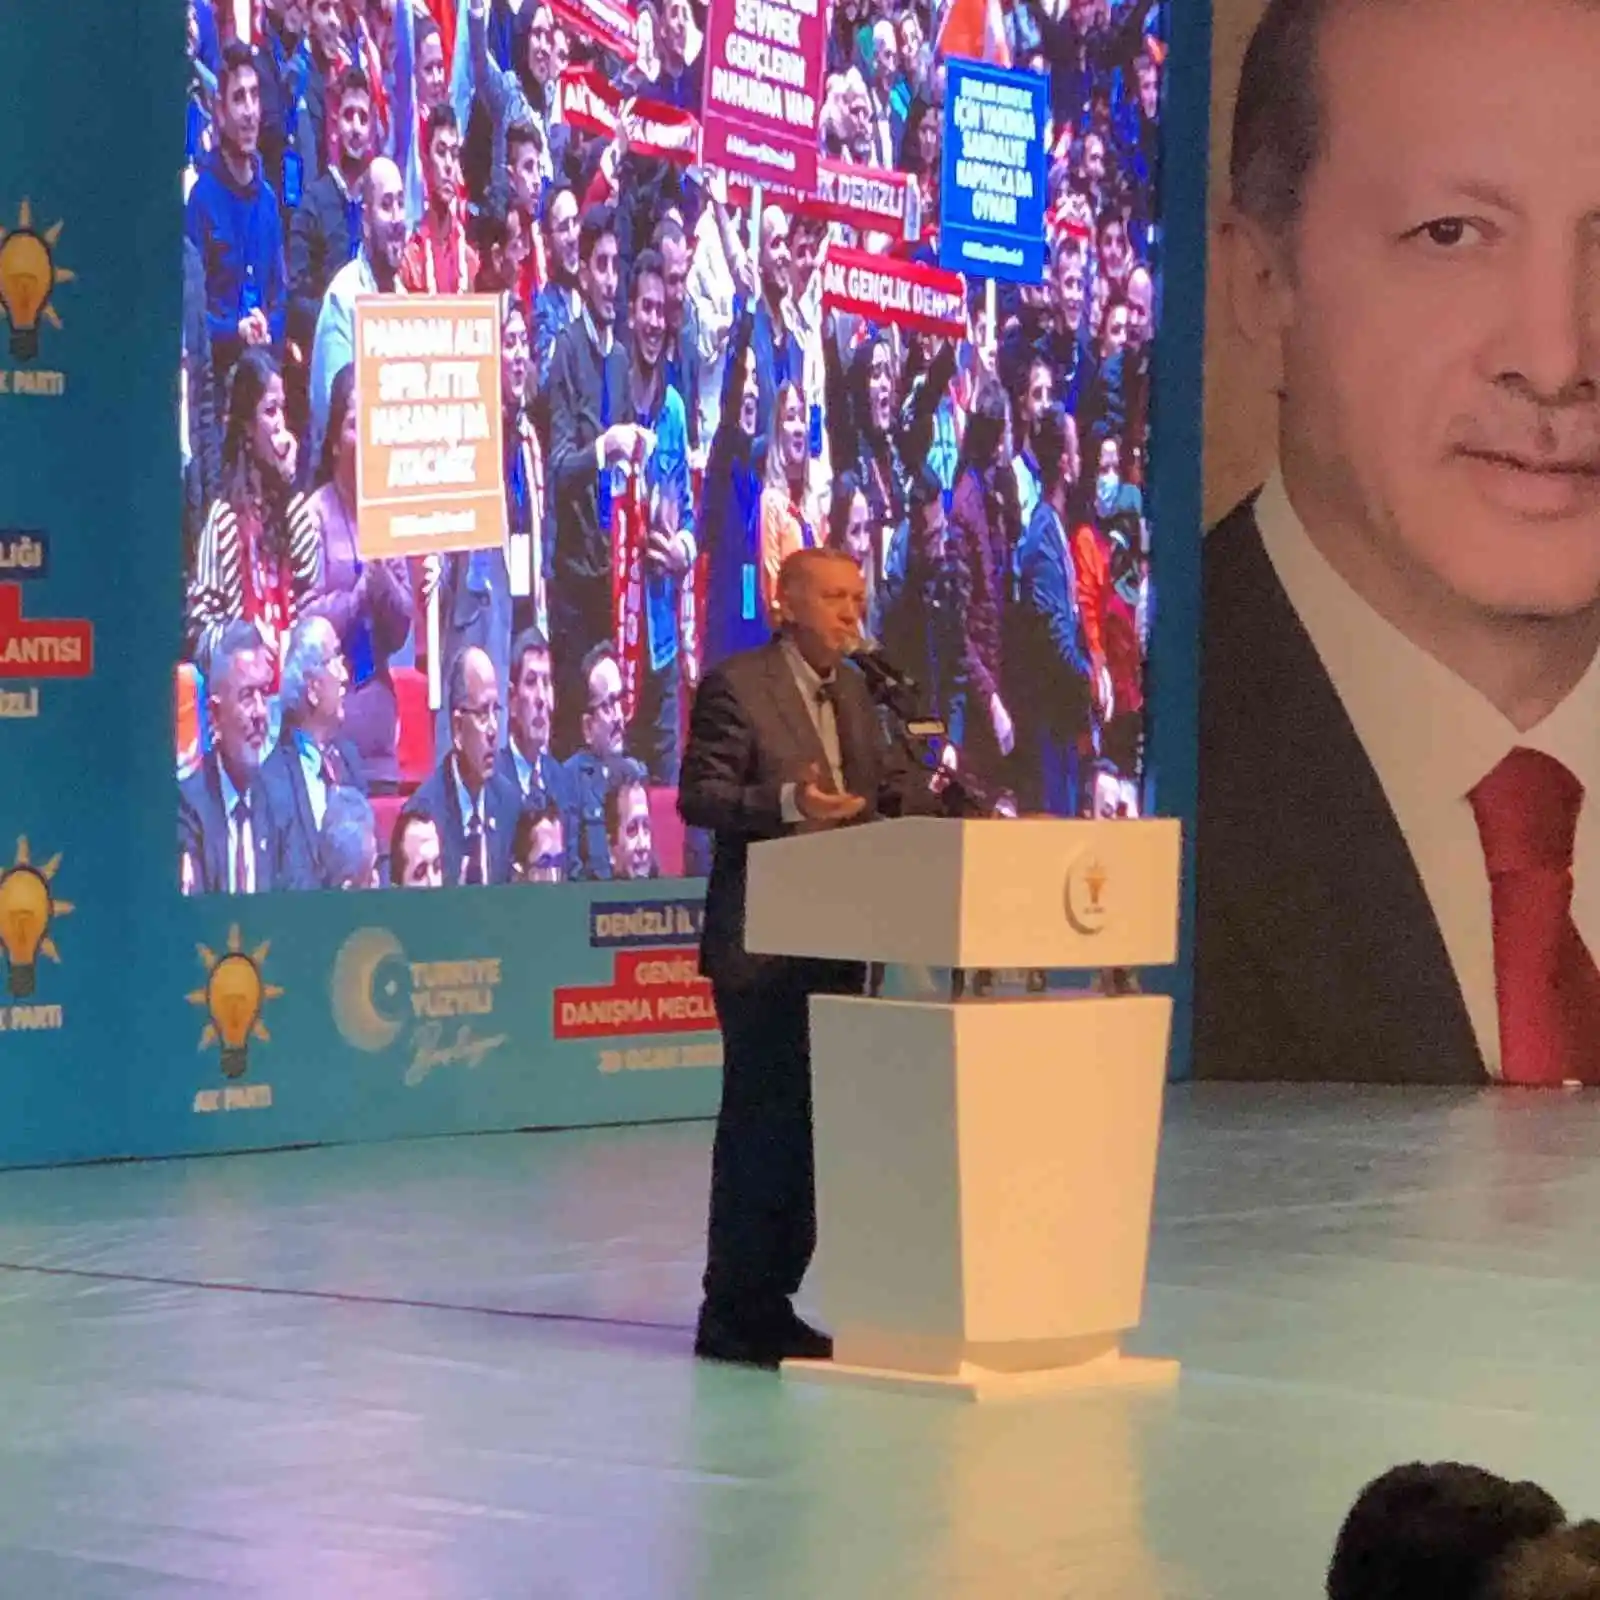 Cumhurbaşkanı Erdoğan: “Beceremiyorlarsa aday bulma konusunda kendilerine yardımcı olabiliriz”
